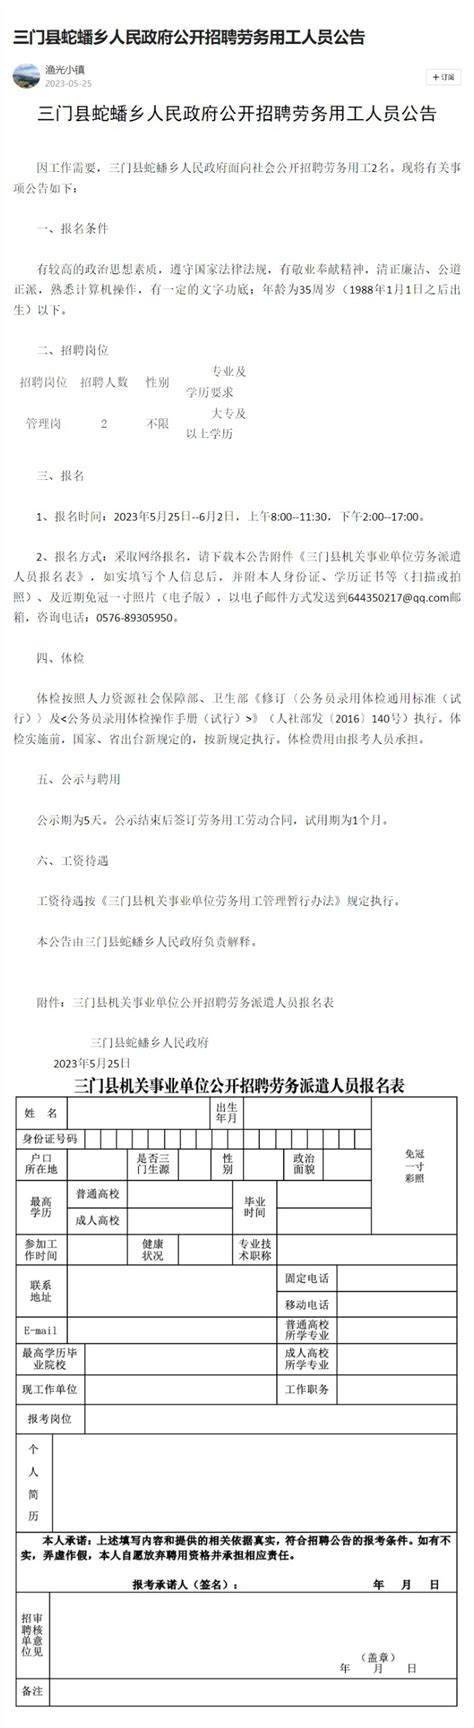 三门县蛇蟠乡人民政府公开招聘劳务用工人员公告